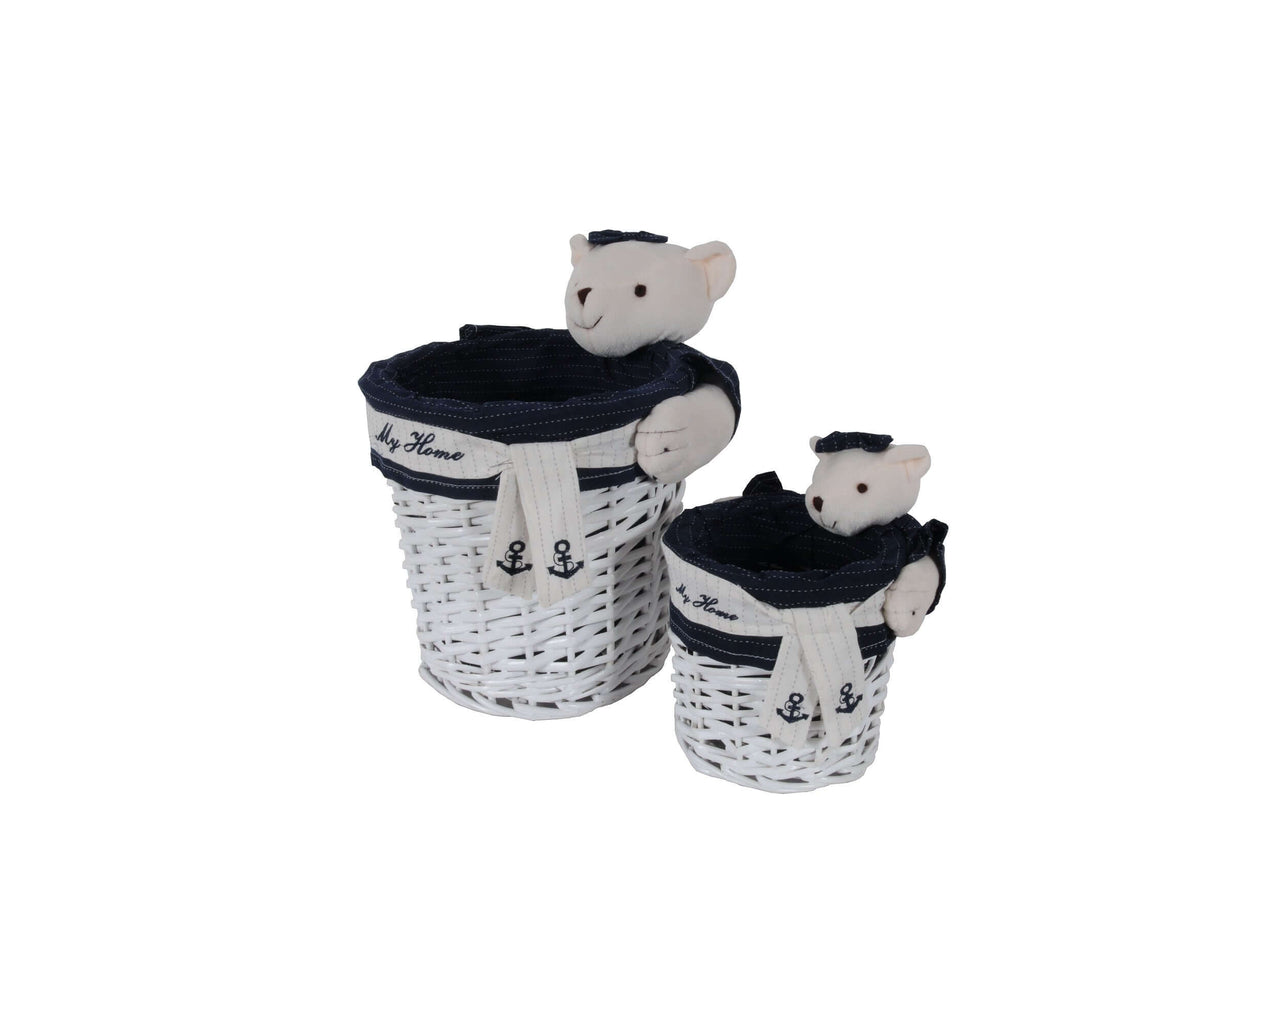 Anne Home - Set of 5 Rectangular Willow Baskets Bear Design